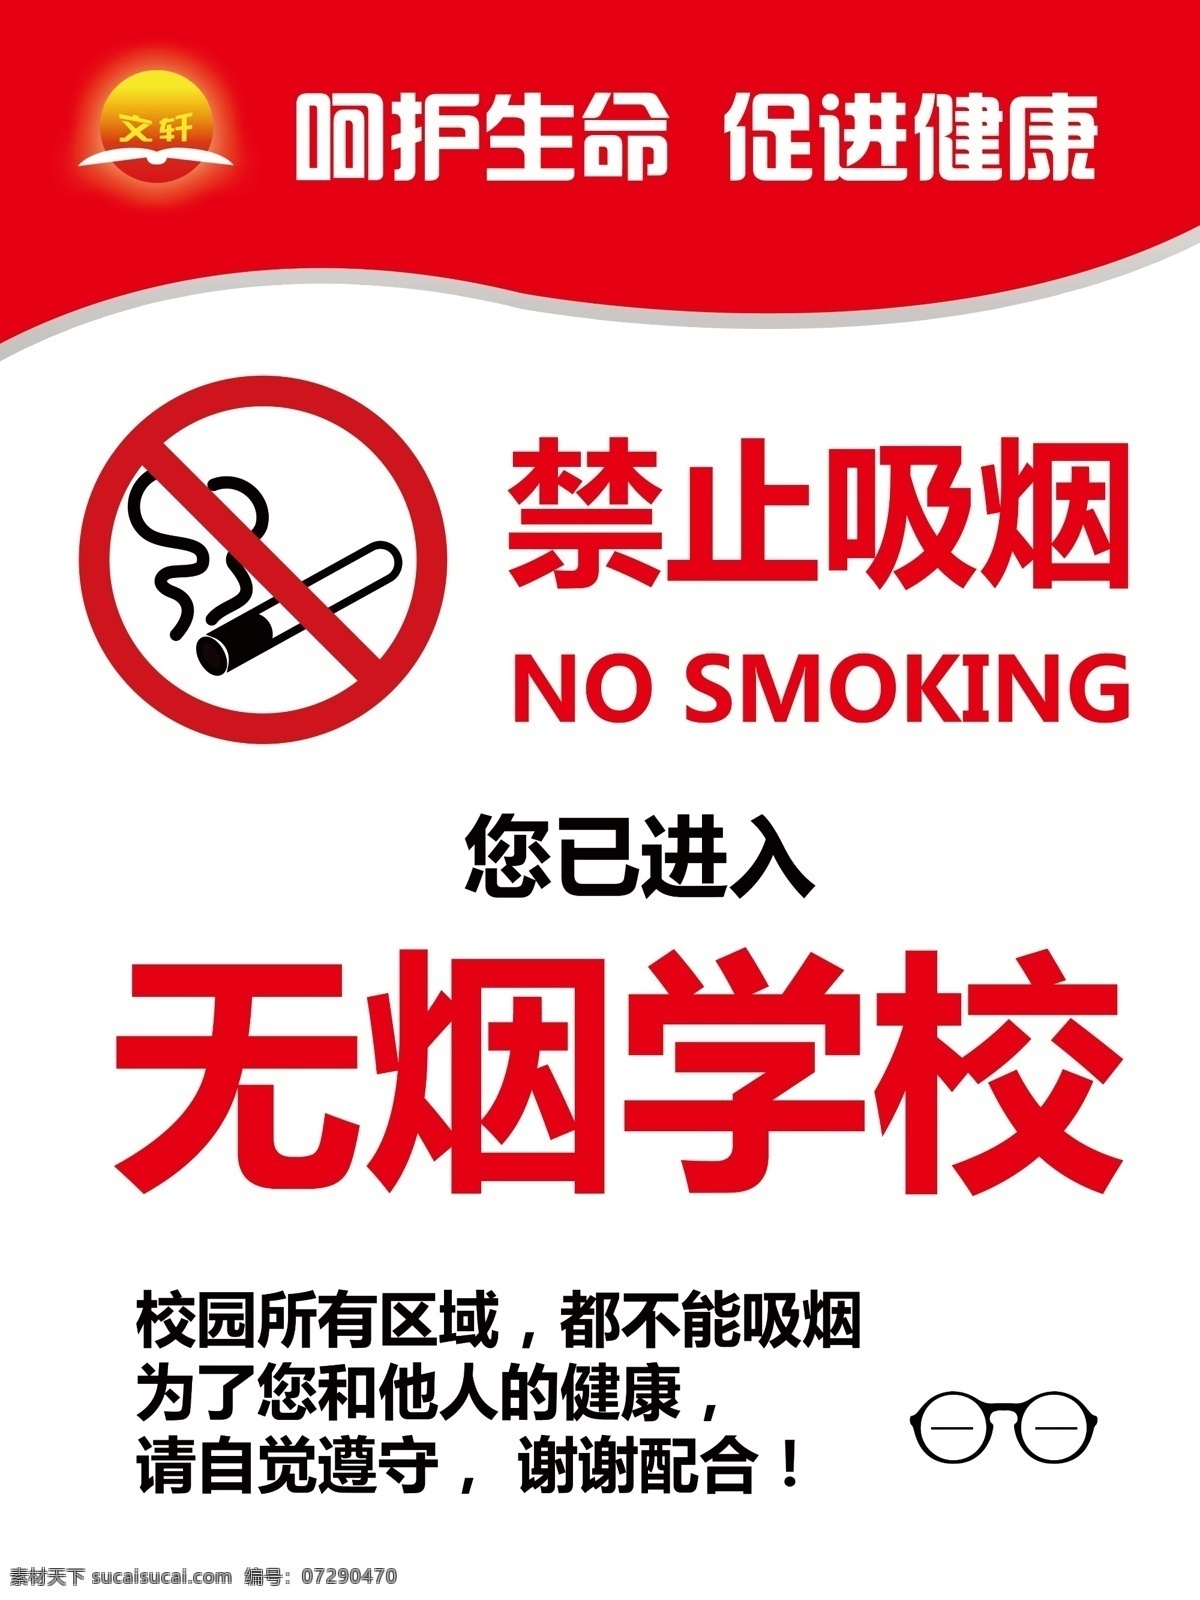 禁止吸烟 无烟校园 禁止 吸烟 无烟 校园 珍爱生命 室内广告设计